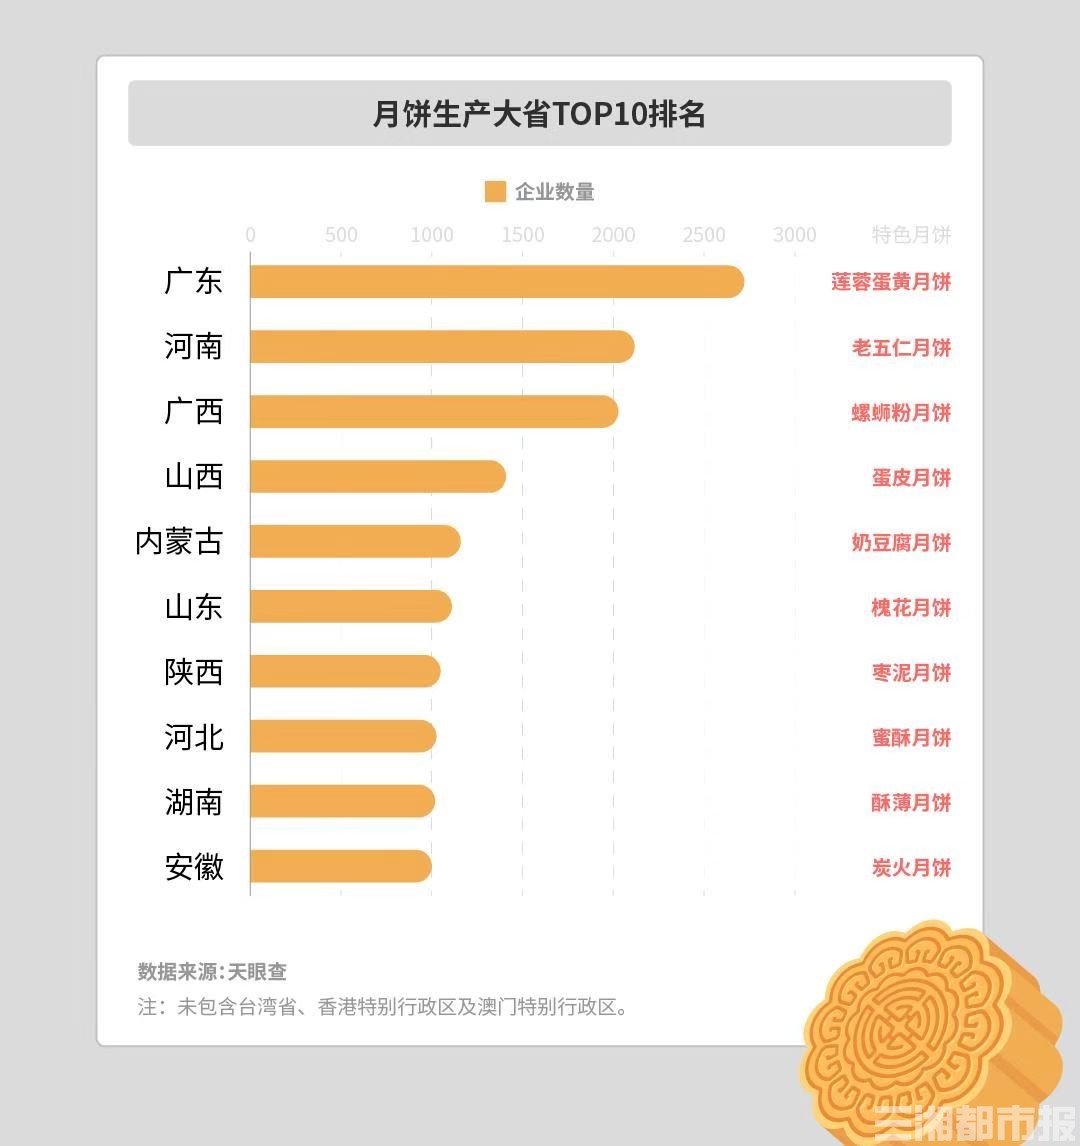 在月饼相关企业数量排名前10的省份里 湖南的企业数量排名全国第九位